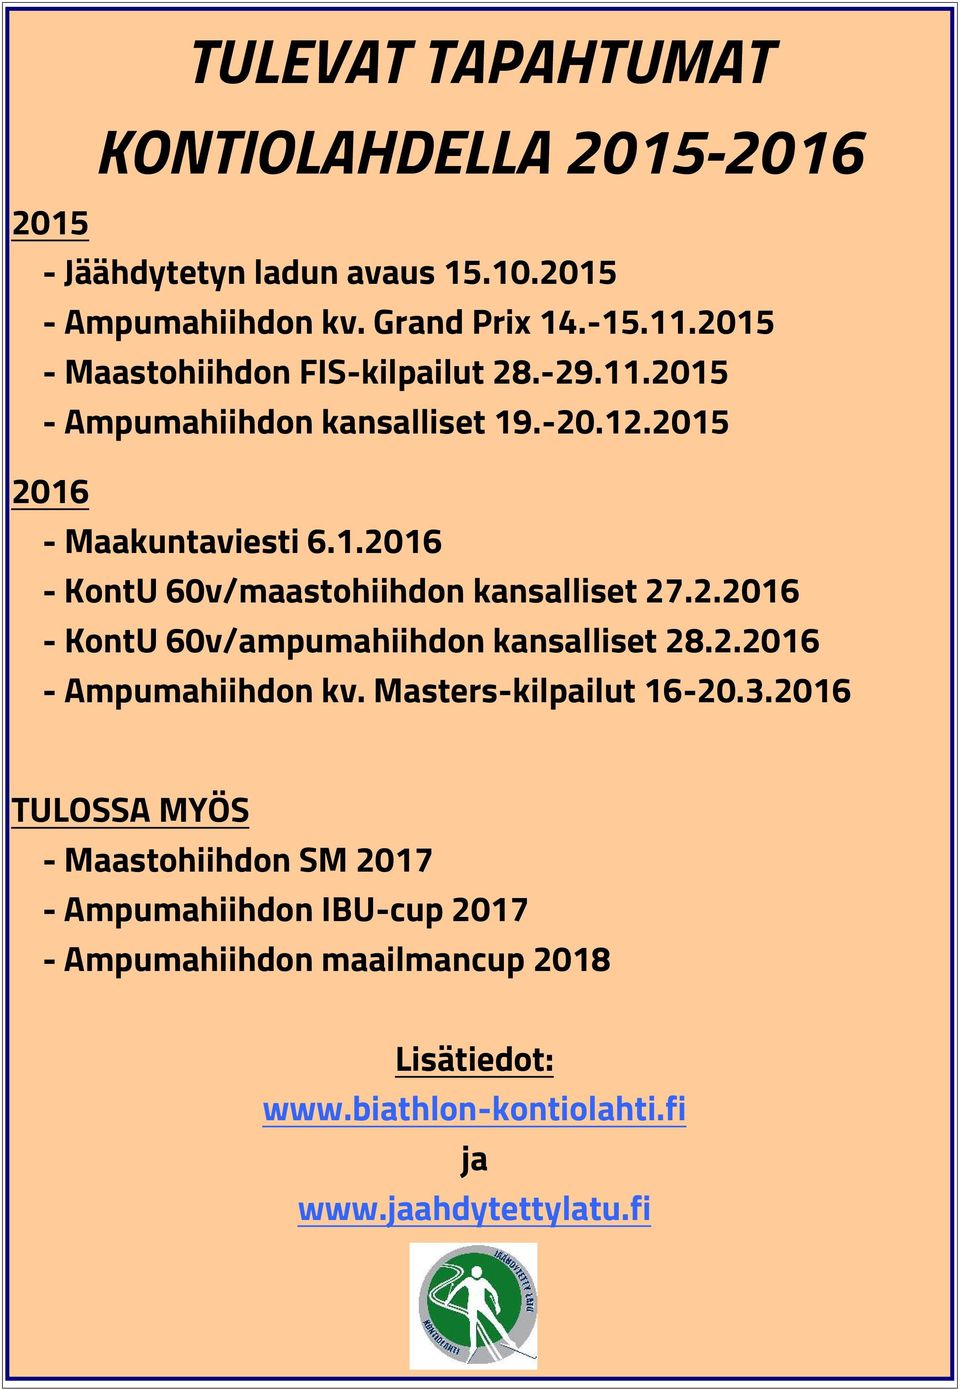 2.2016 - KontU 60v/ampumahiihdon kansalliset 28.2.2016 - Ampumahiihdon kv. Masters-kilpailut 16-20.